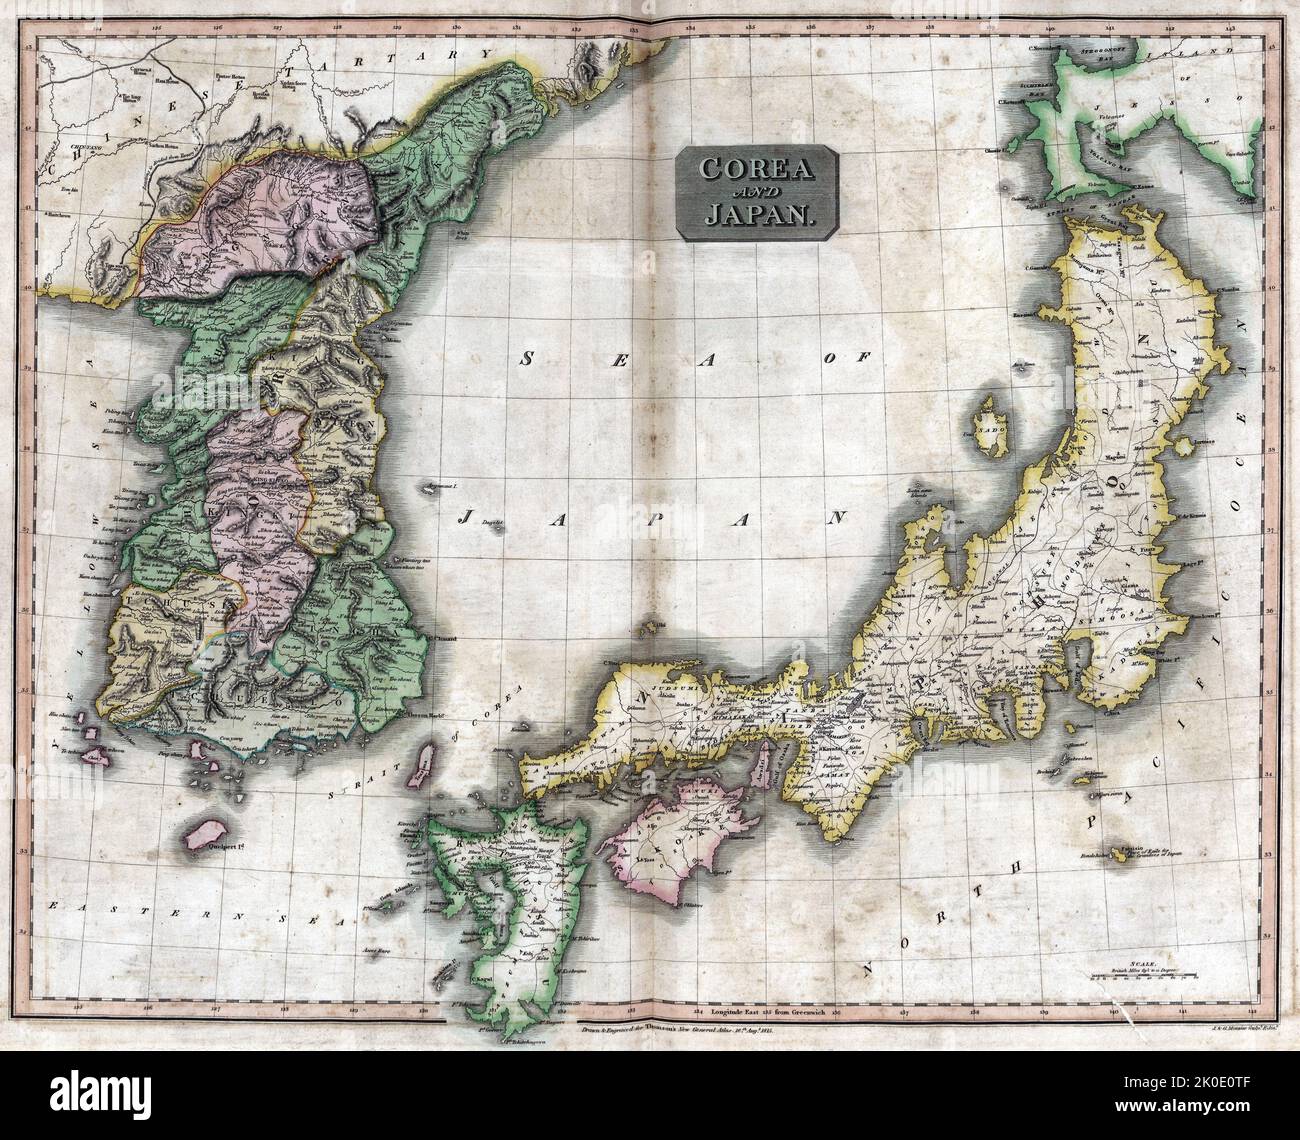 Mappa europea raffigurante la Corea e il Giappone con il Mare del Giappone, c1875. Foto Stock